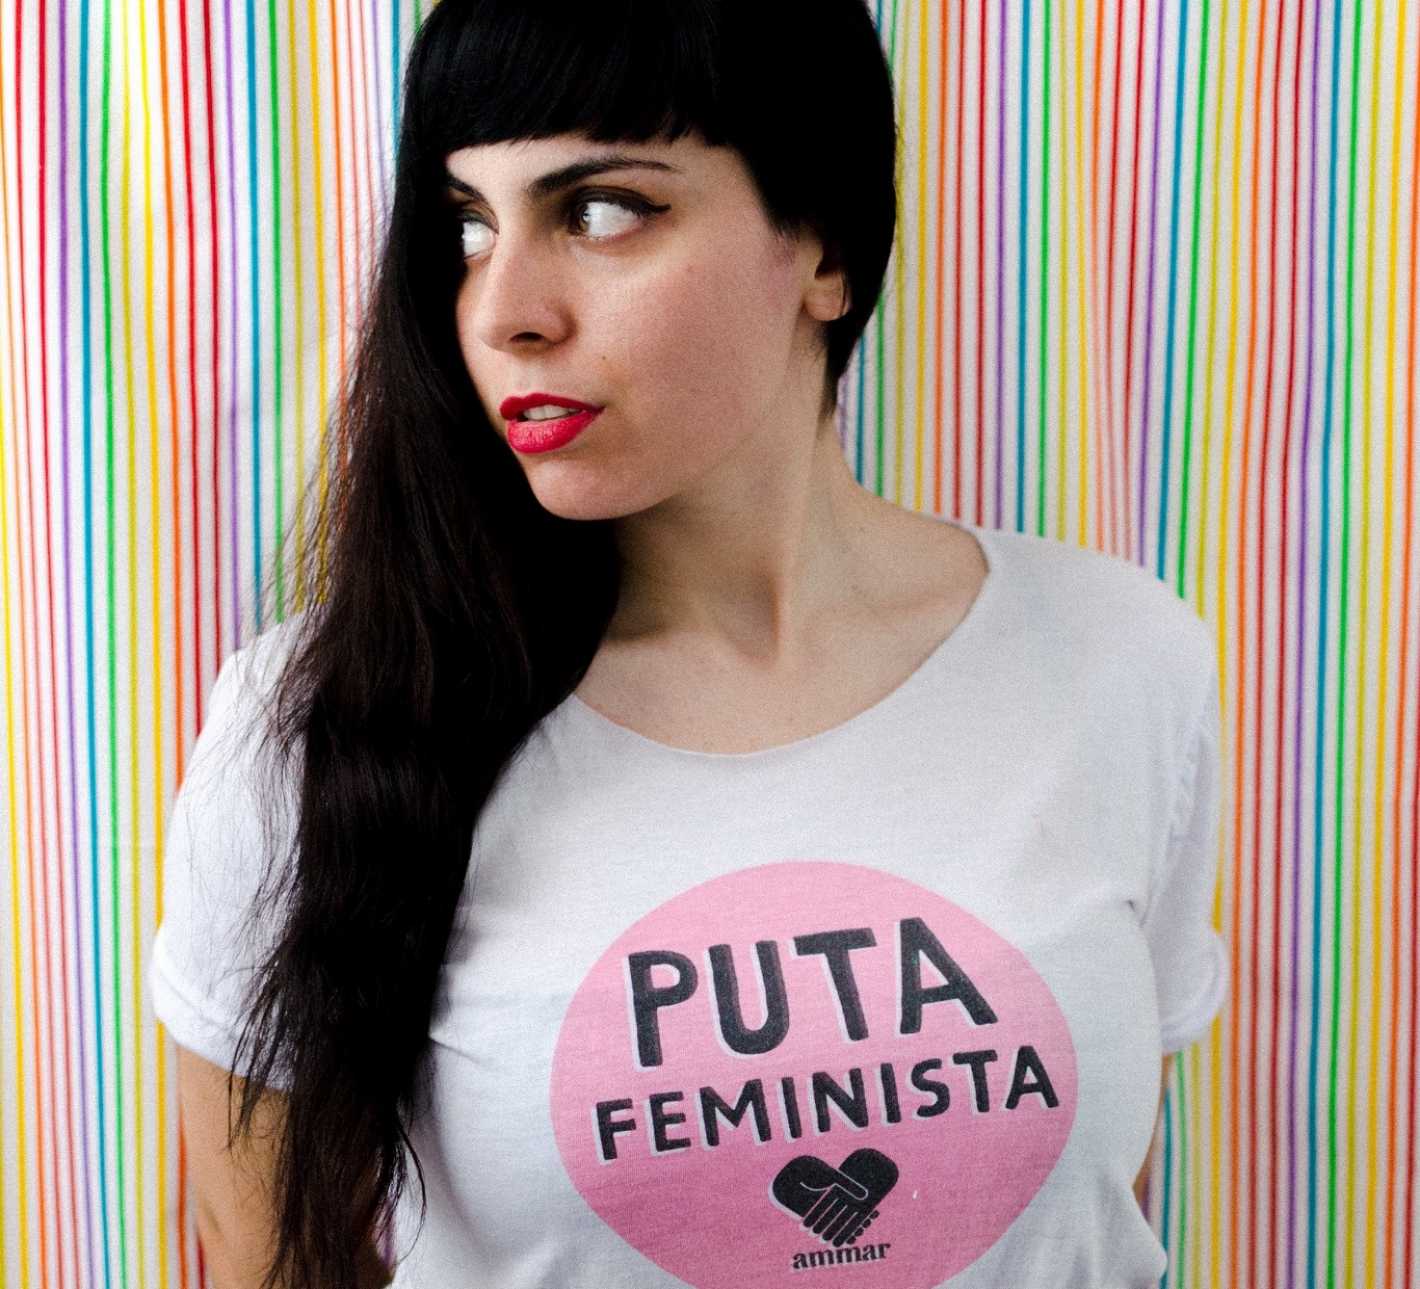 María Riot Actriz Porno Prostituta Y Feminista Mendoza Post